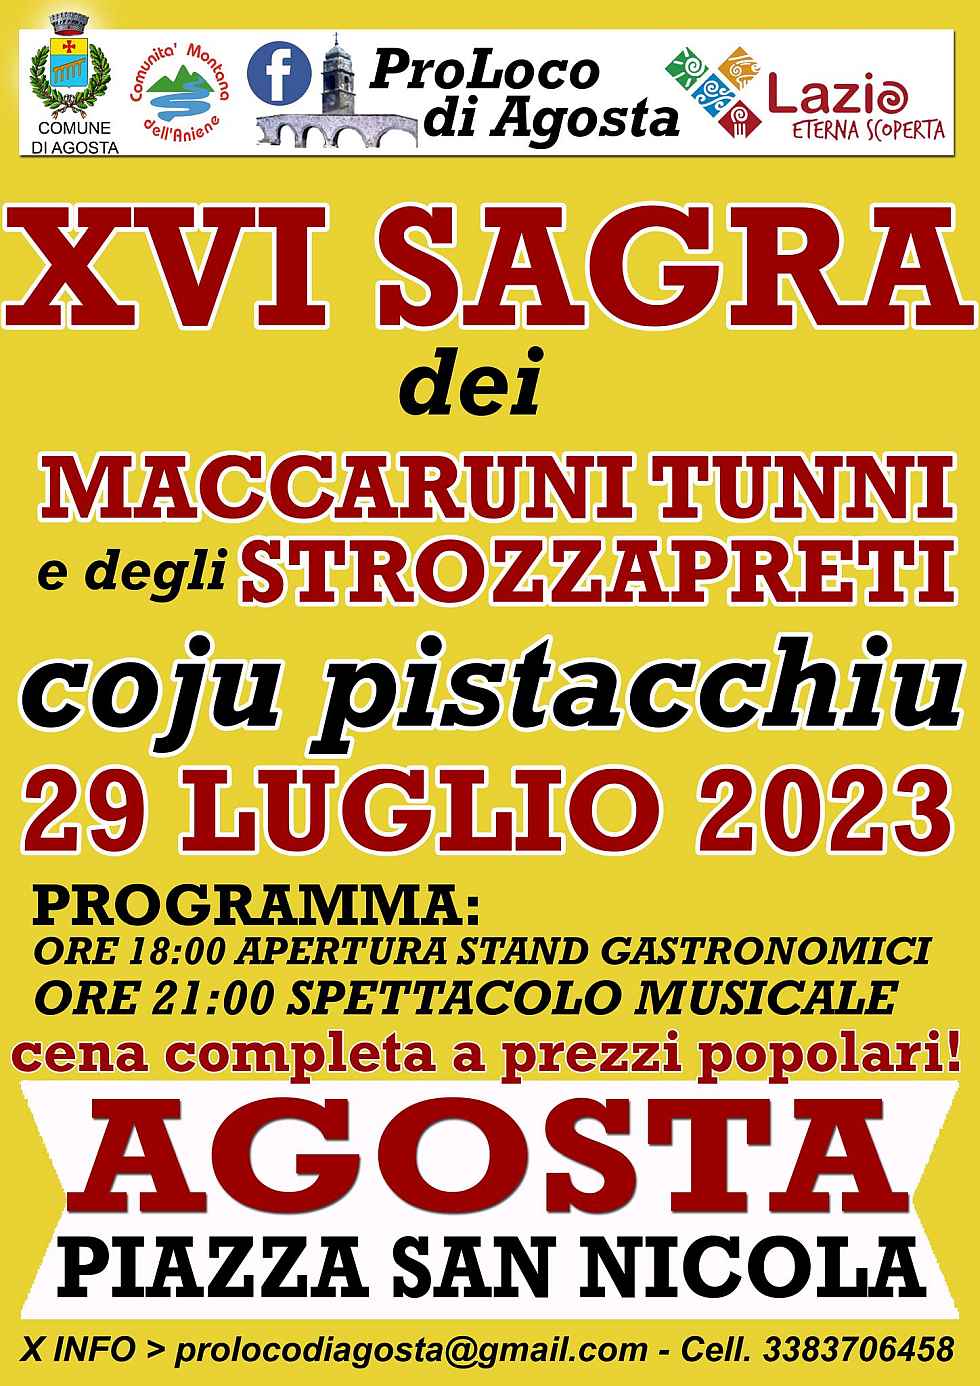 Agosta (RM)
"16^ Sagra dei Maccaruni Tunni e degli Strozzapreti"
29 Luglio 2023 